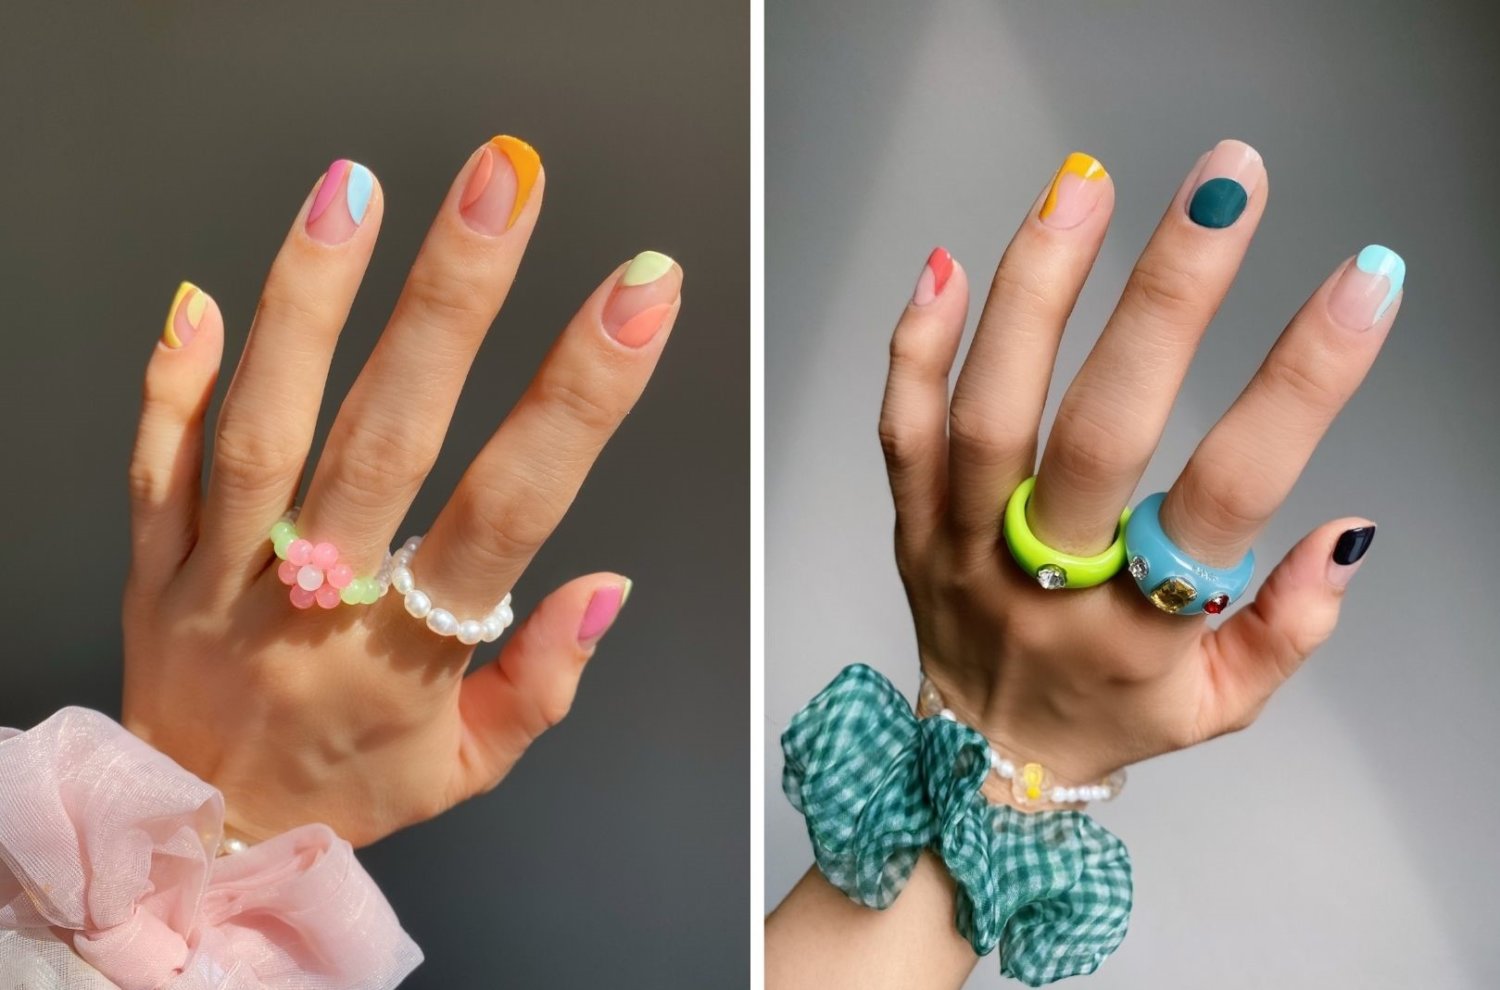 Zwei linke Hände mit buntem Nageldesign, Ringen und großen Zopfgummis ums Handgelenk herum, der Nagellack ist in abstrakten Formen und verschiedenen Farben auf die Nägel aufgetragen